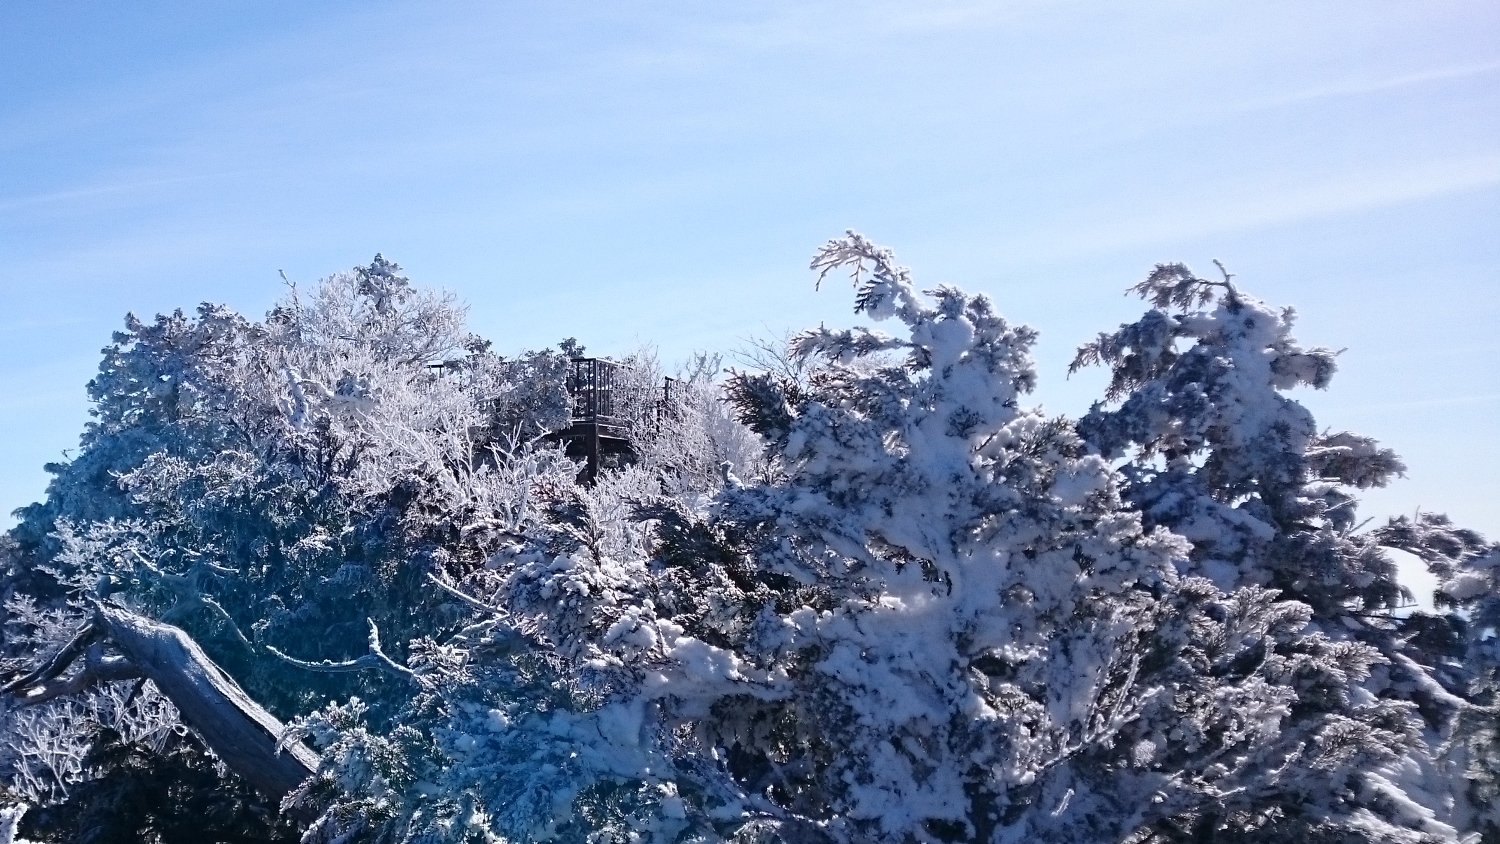 冬道から見る山頂展望台の鉄骨とそれを囲む樹氷